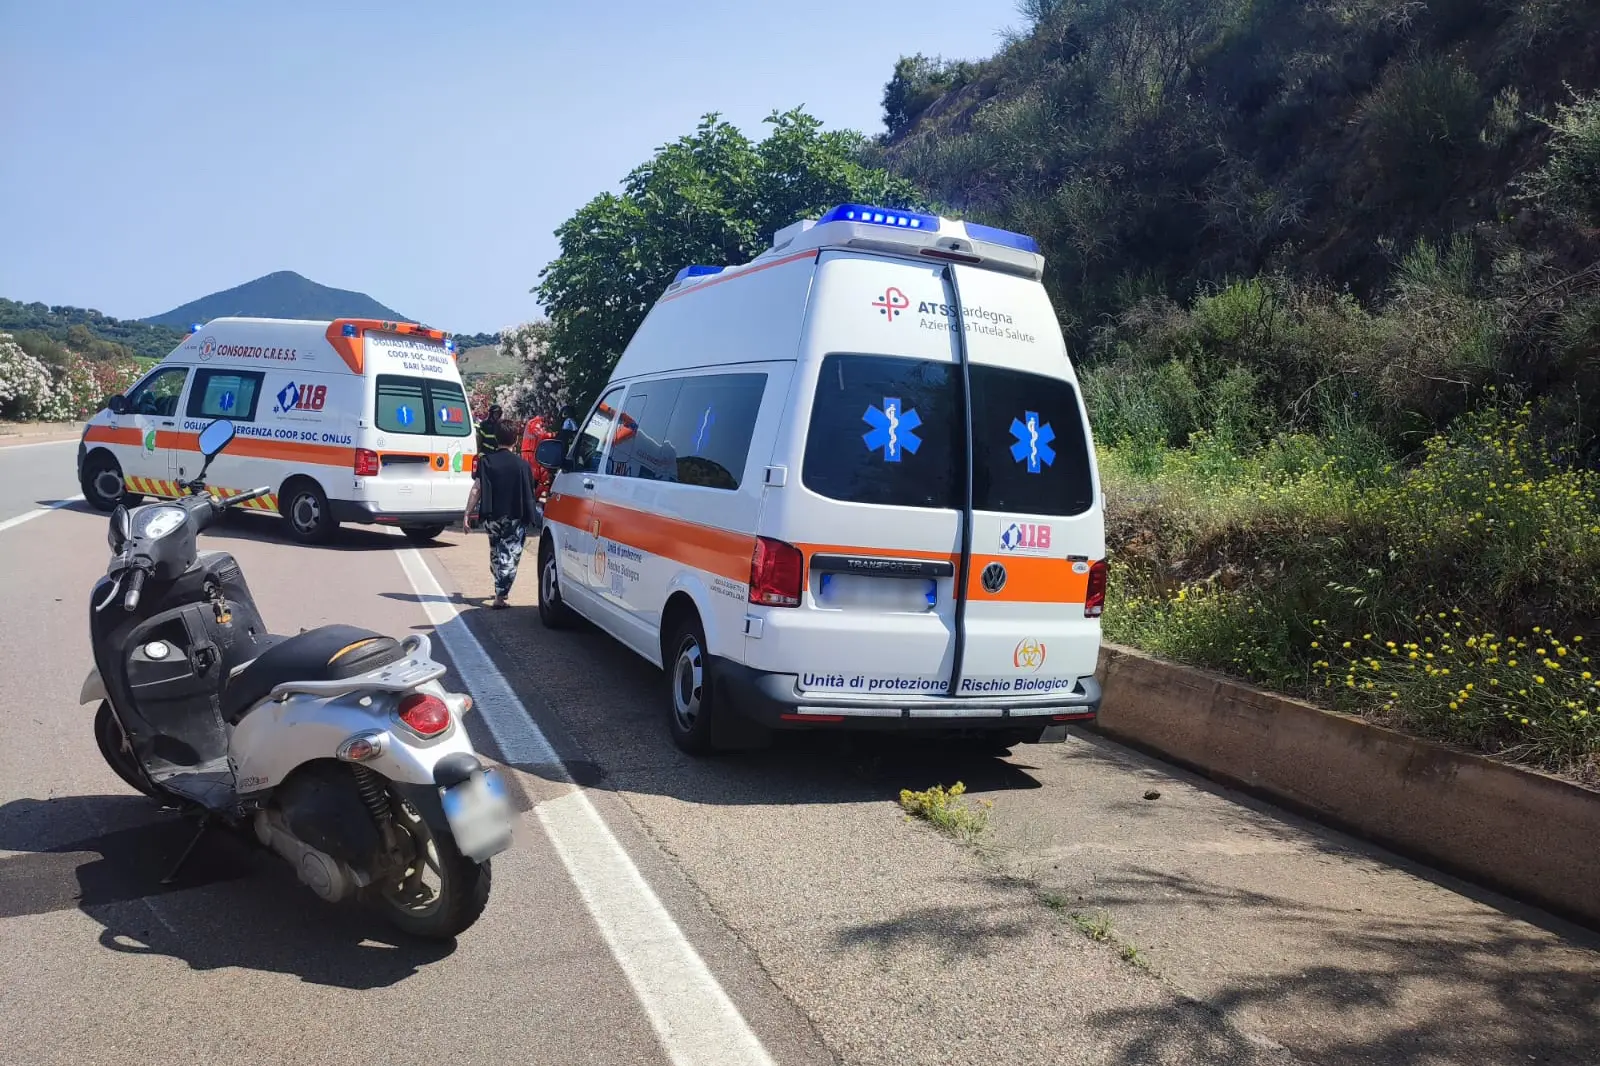 Lo scooter coinvolto nell'incidente e le ambulanze durante l'intervento (foto Secci)